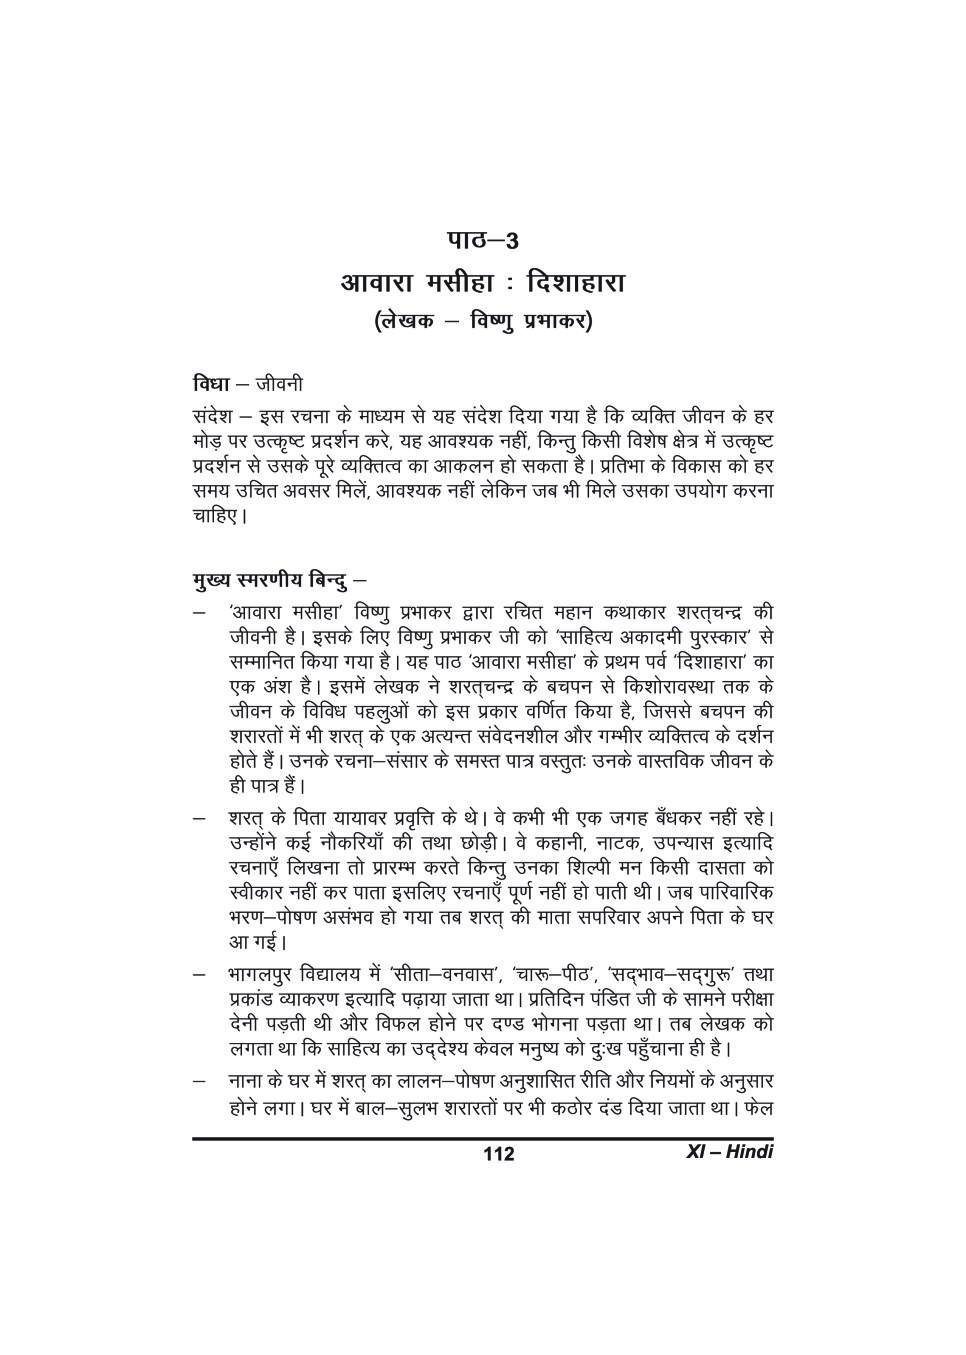 कक्षा 11 हिंदी के नोट्स - आवारा मसीहा : दिशाहारा - Page 1